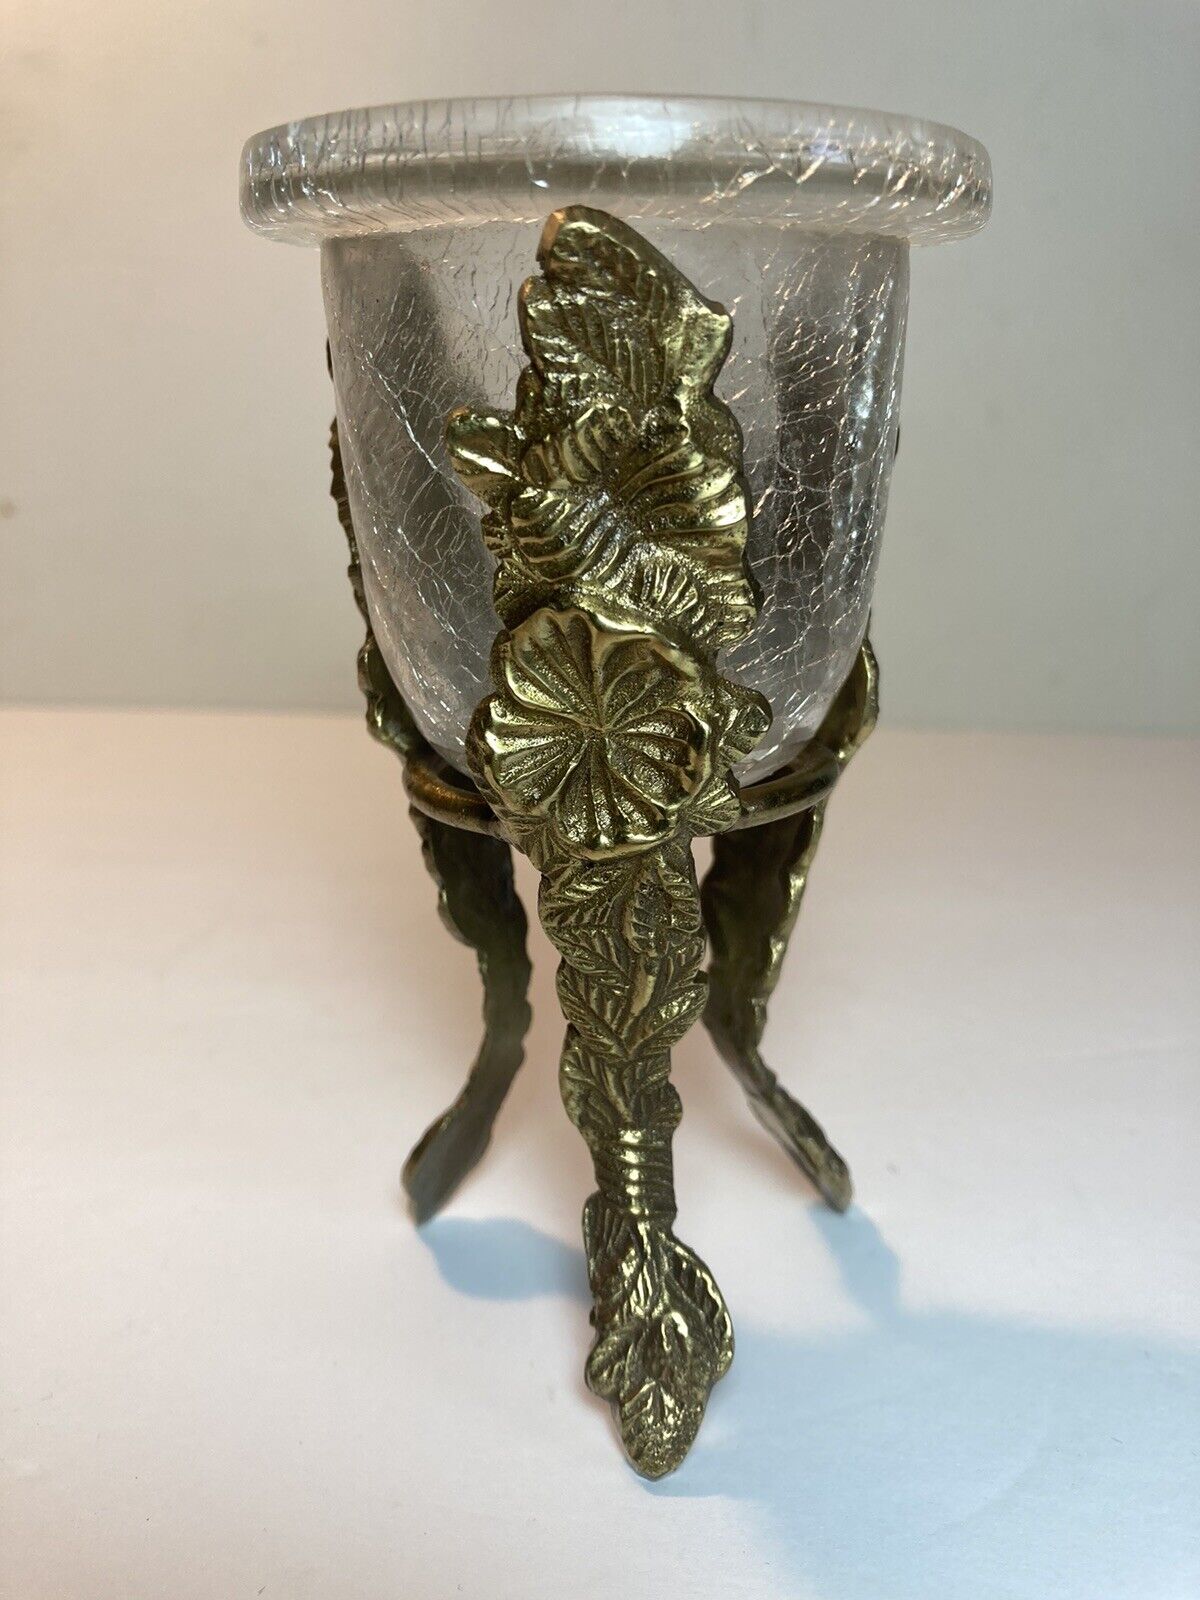 Vintage Crackled Glass Flower Vase With Brass Holder Stand 5.25”